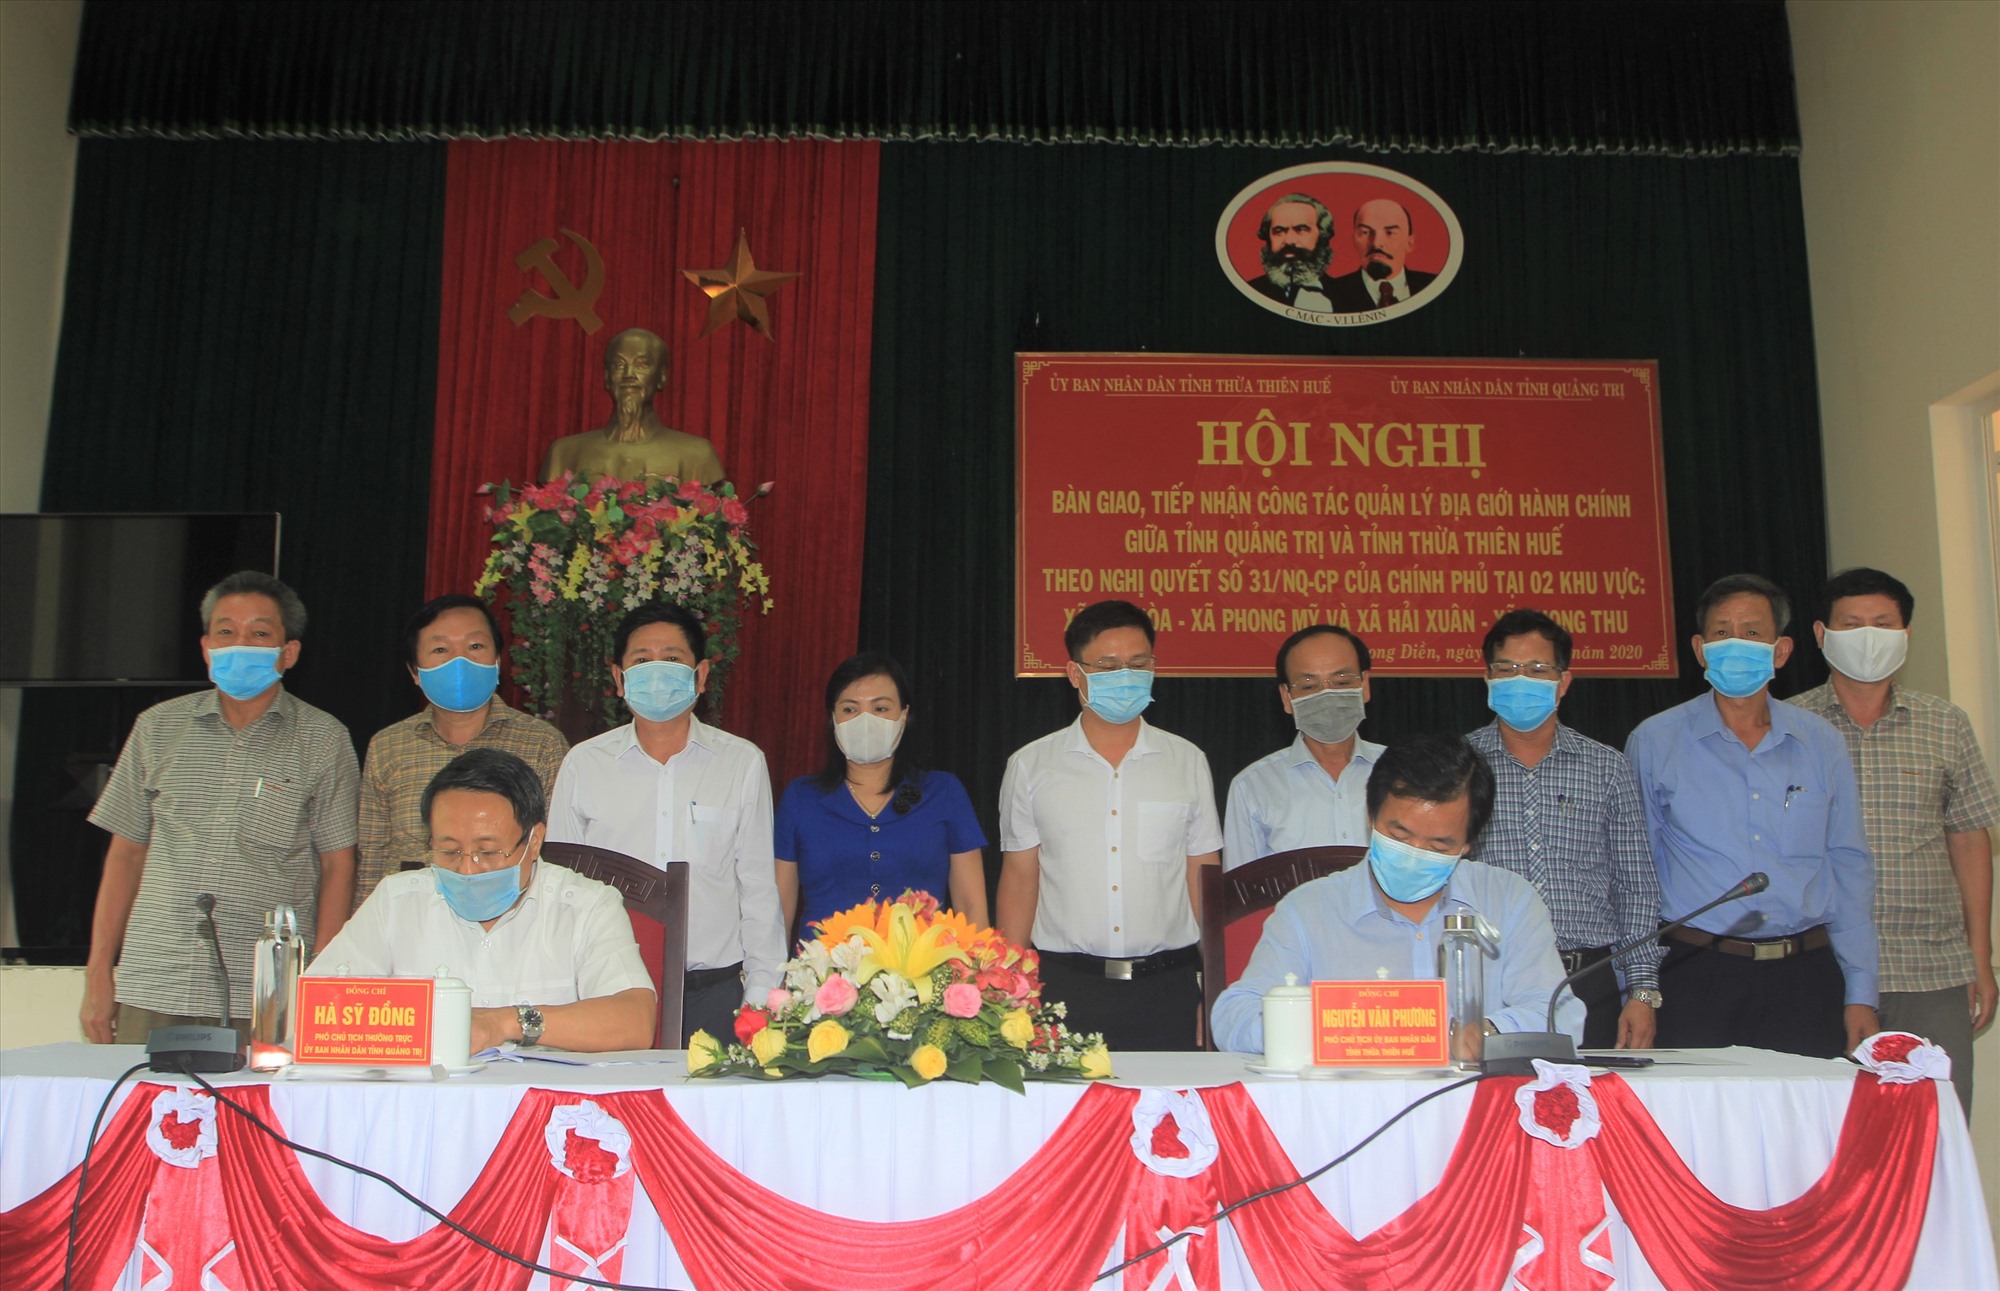 Lãnh đạo hai tỉnh Quảng Trị - Thừa Thiên- Huế ký kết biên bản thống nhất quản lý đường ĐGHC theo Nghị quyết số 31 của Chính phủ